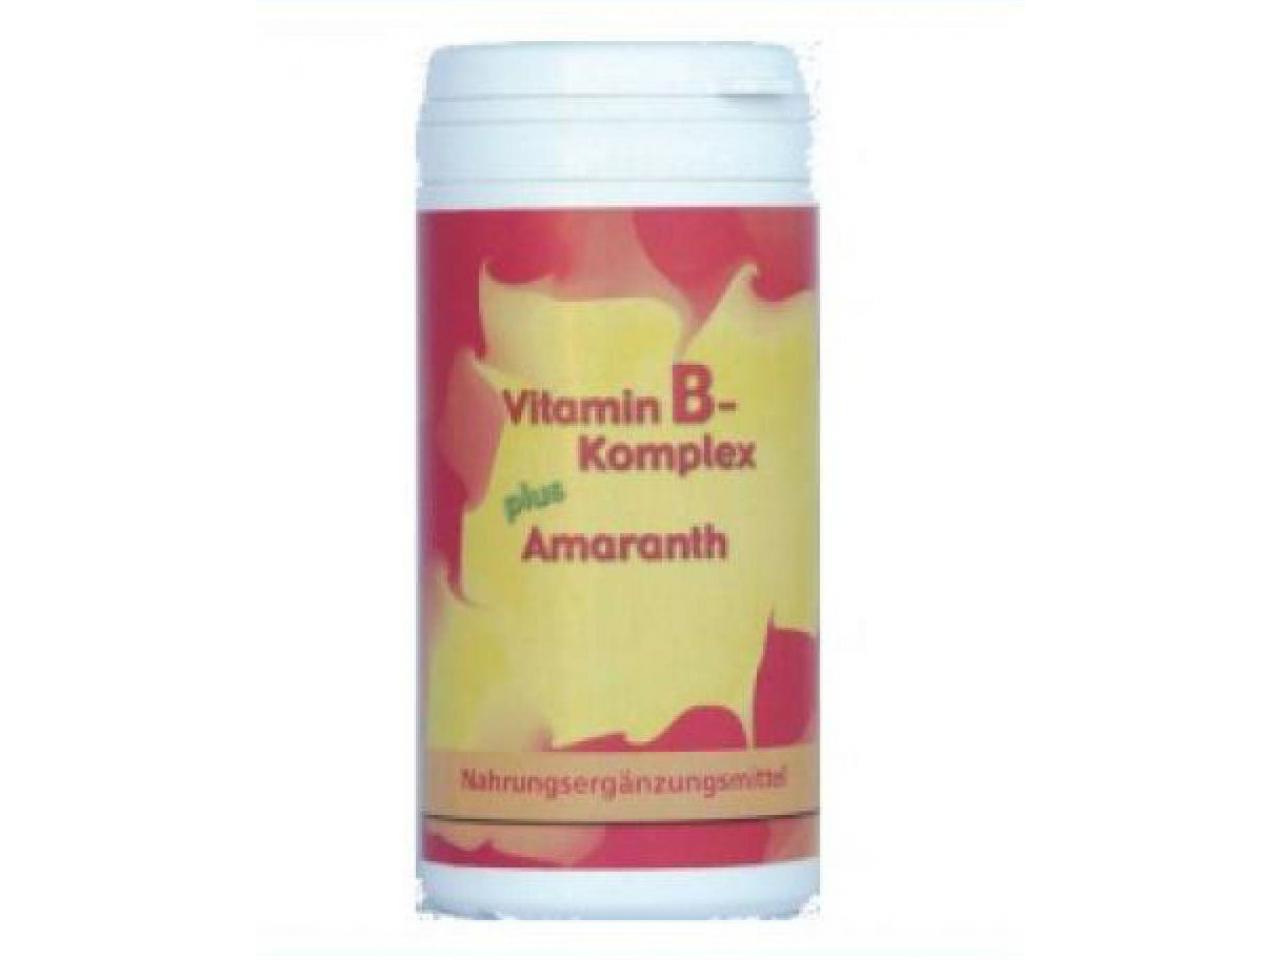 OMEGA - Vitamin-B-Komplex plus Amaranth 60 Kapseln | 41 g